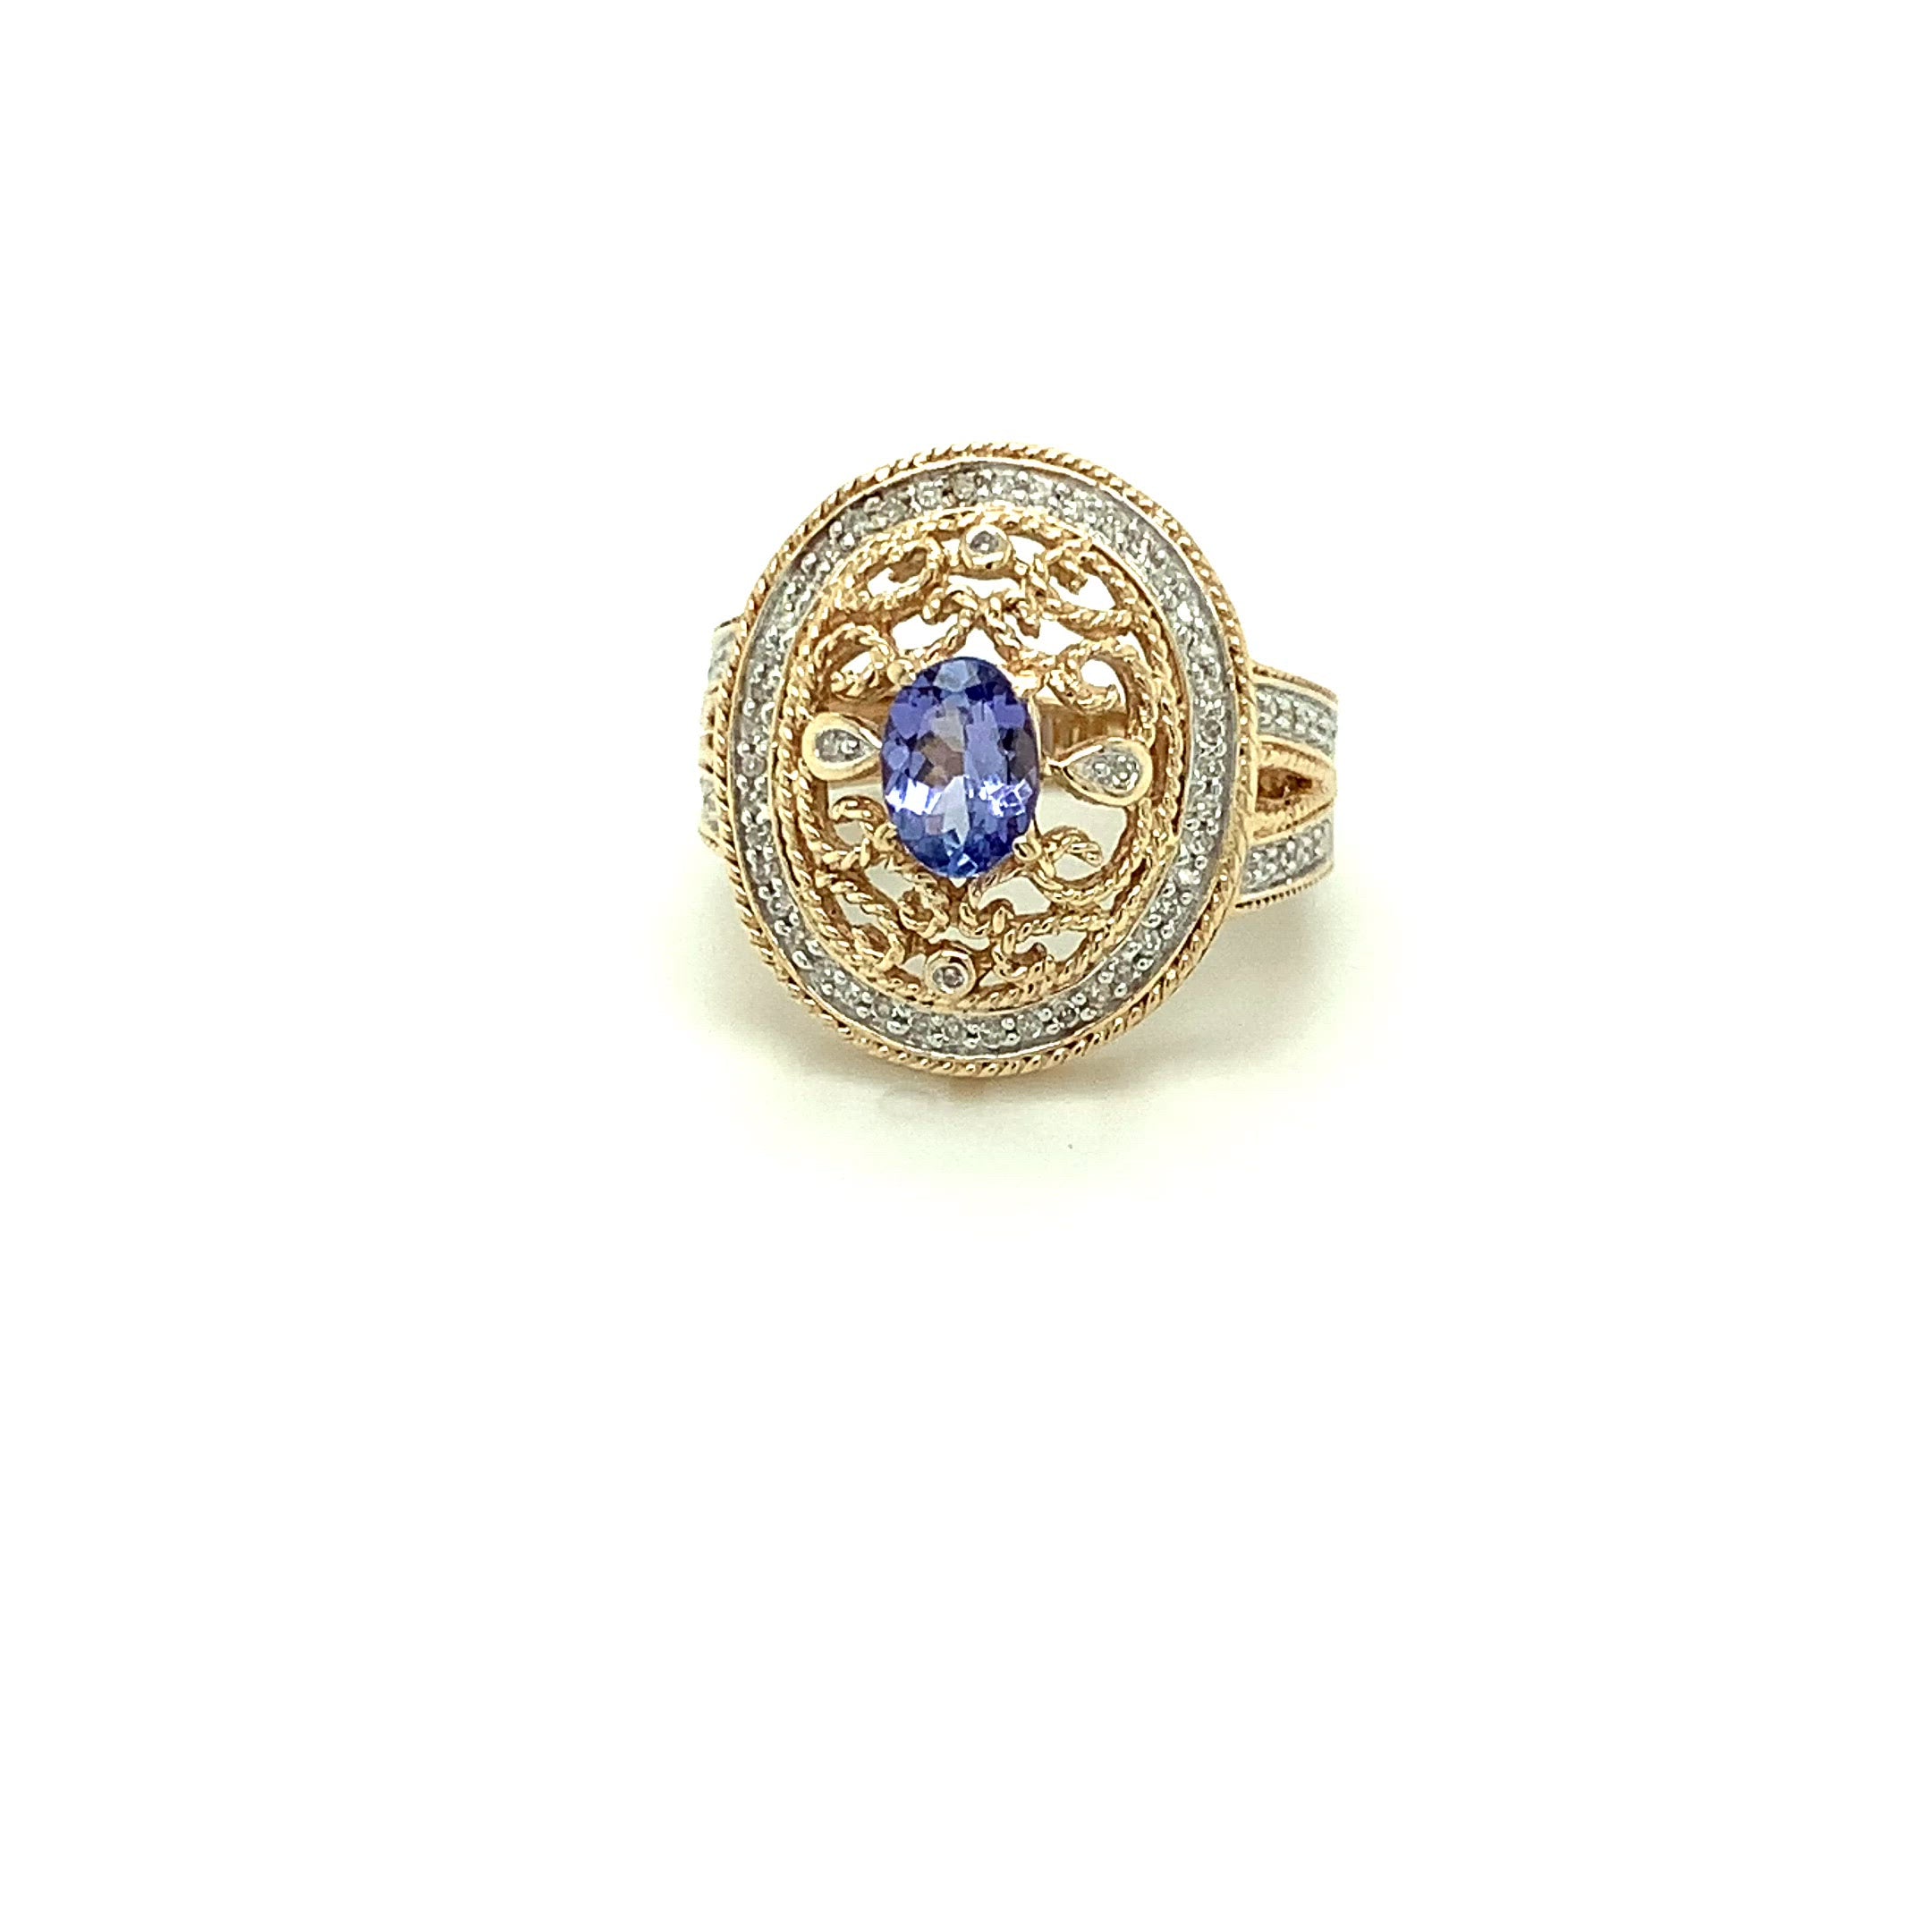 Natural Tanzanite & Diamond Ring 10K Solid Gold 1.34tcw Cocktail Ring Tanzanite Ring Statement Ring Fashion Ring Vintage Ring Women's Ring